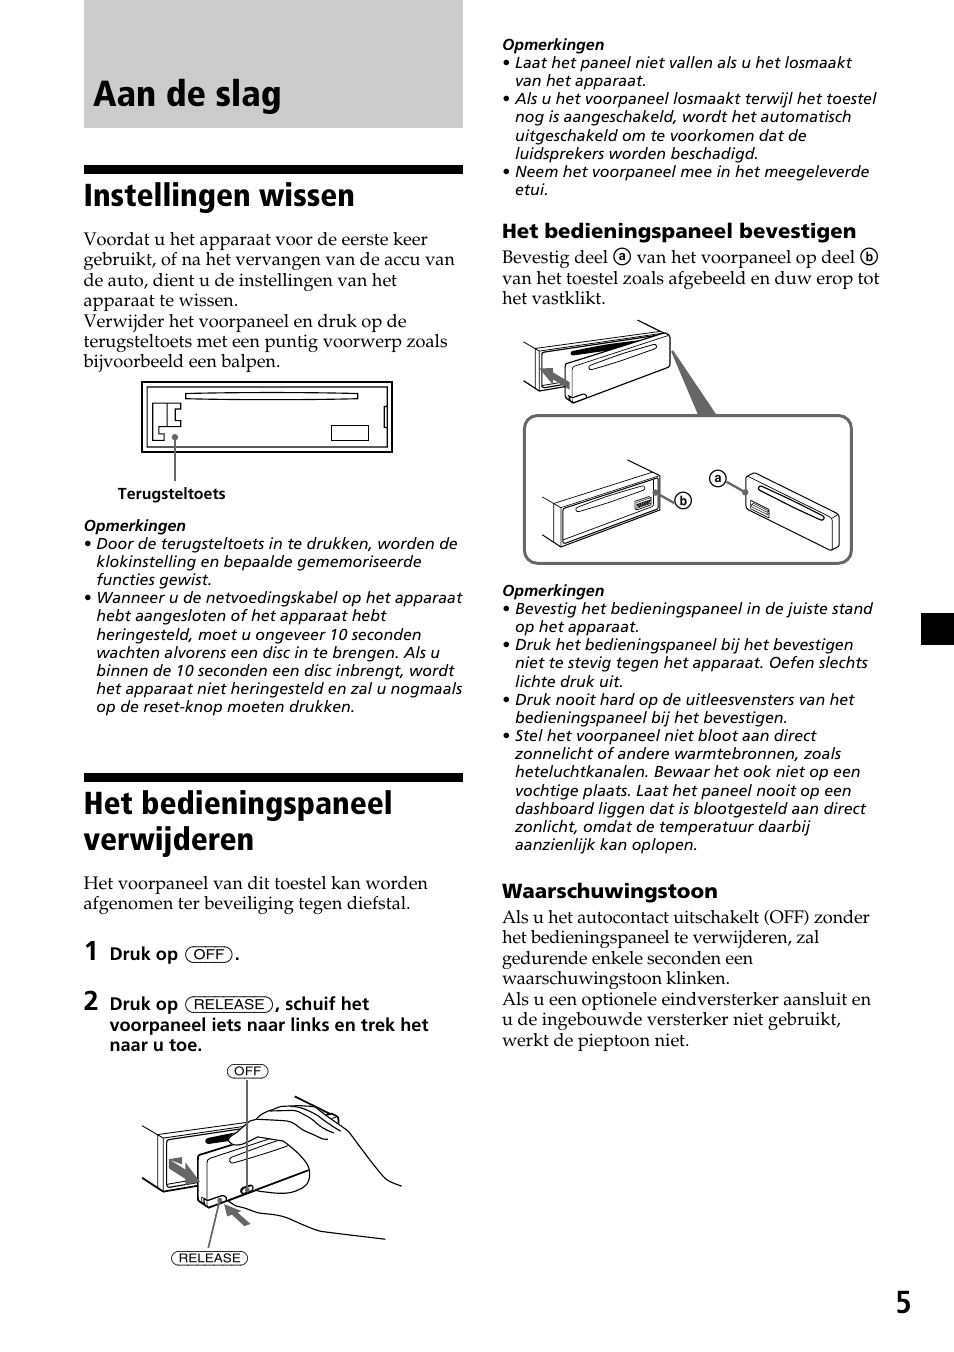 Aan de slag, Instellingen wissen, Het bedieningspaneel verwijderen | Sony CDX-4270R Benutzerhandbuch | Seite 53 / 96